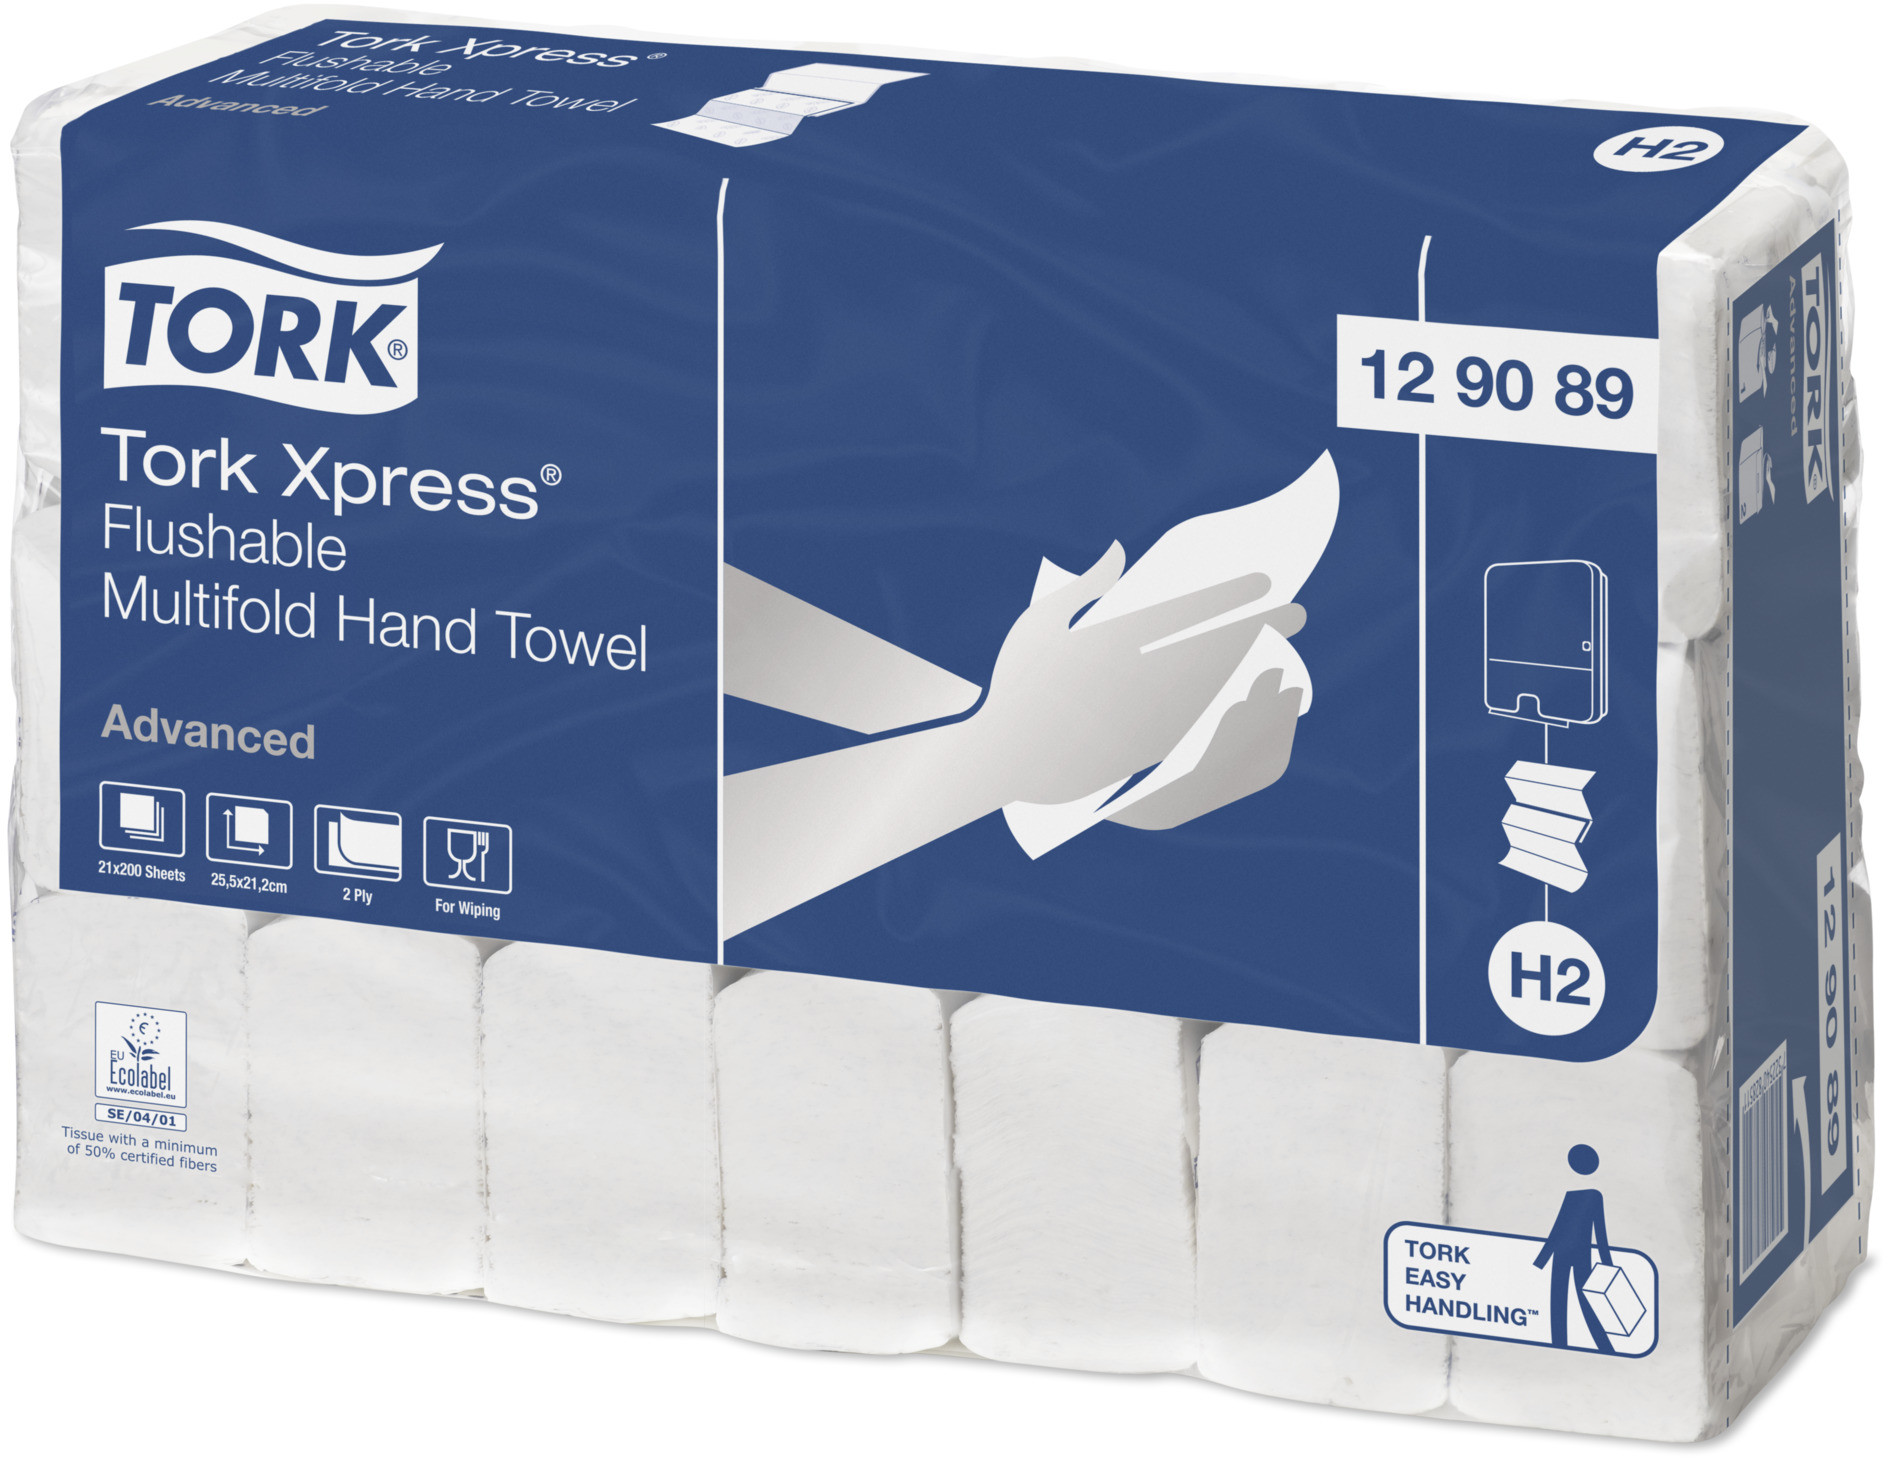 TORK Xpress łatwo rozpuszczalny miękki ręcznik Multifold, 3 panelowy w składce wielopanelowej 129089 21 szt.